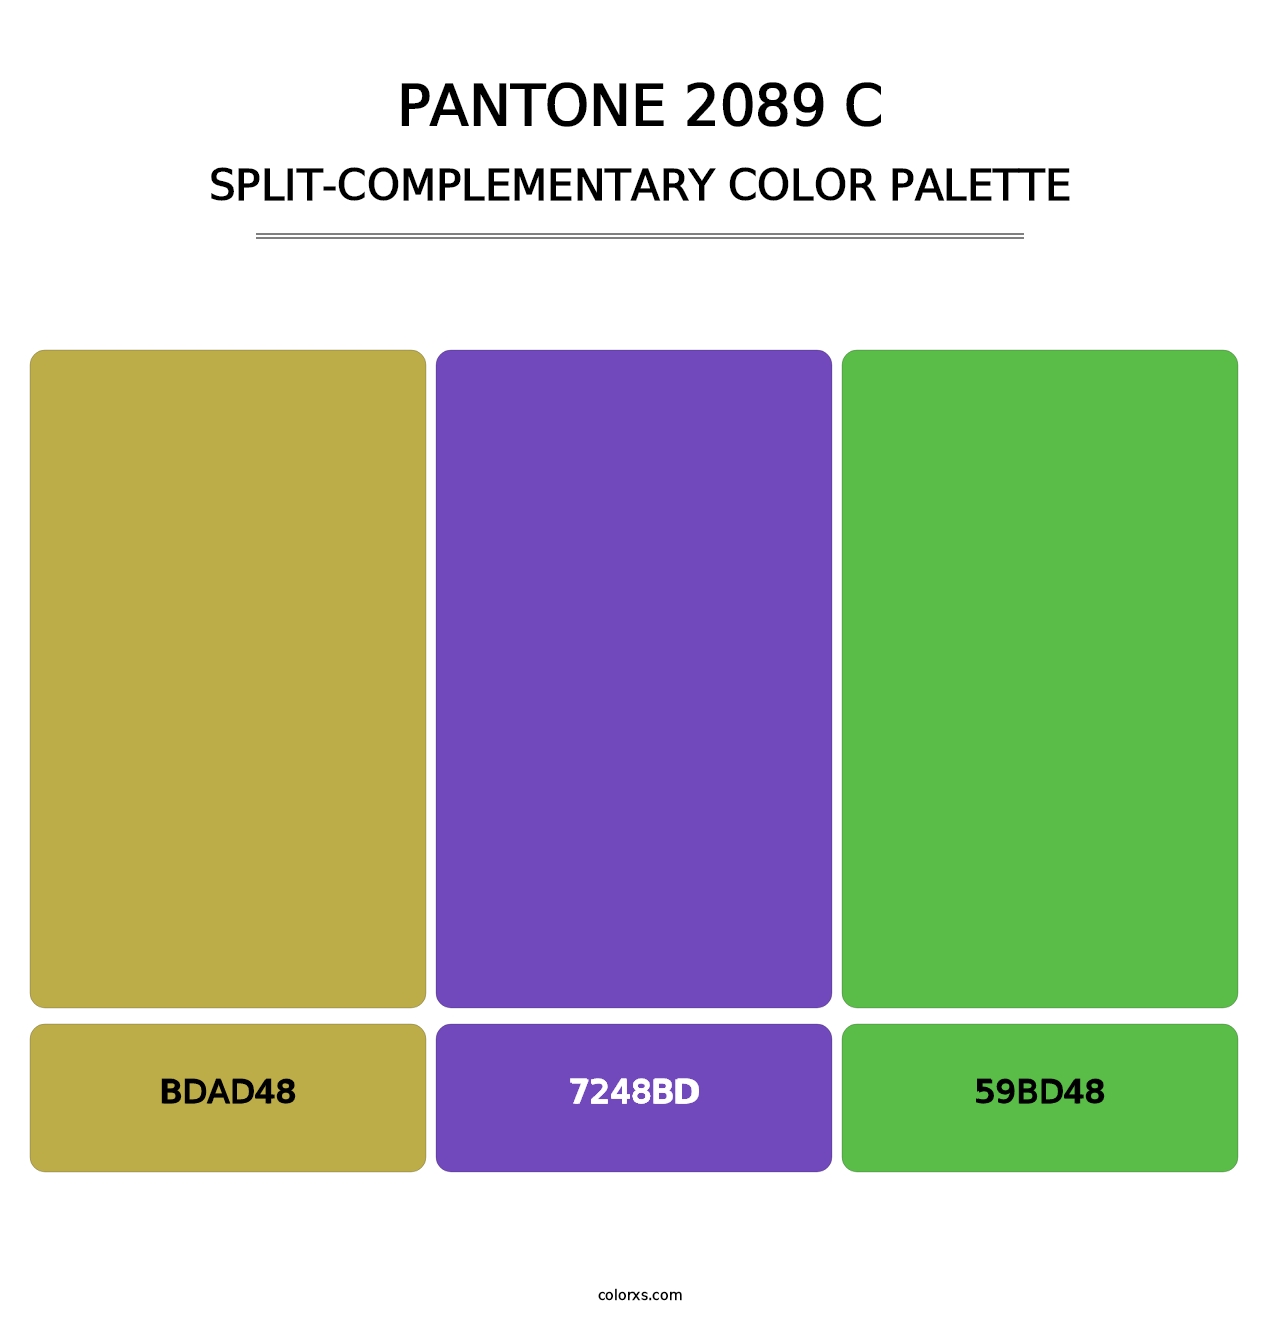 PANTONE 2089 C - Split-Complementary Color Palette